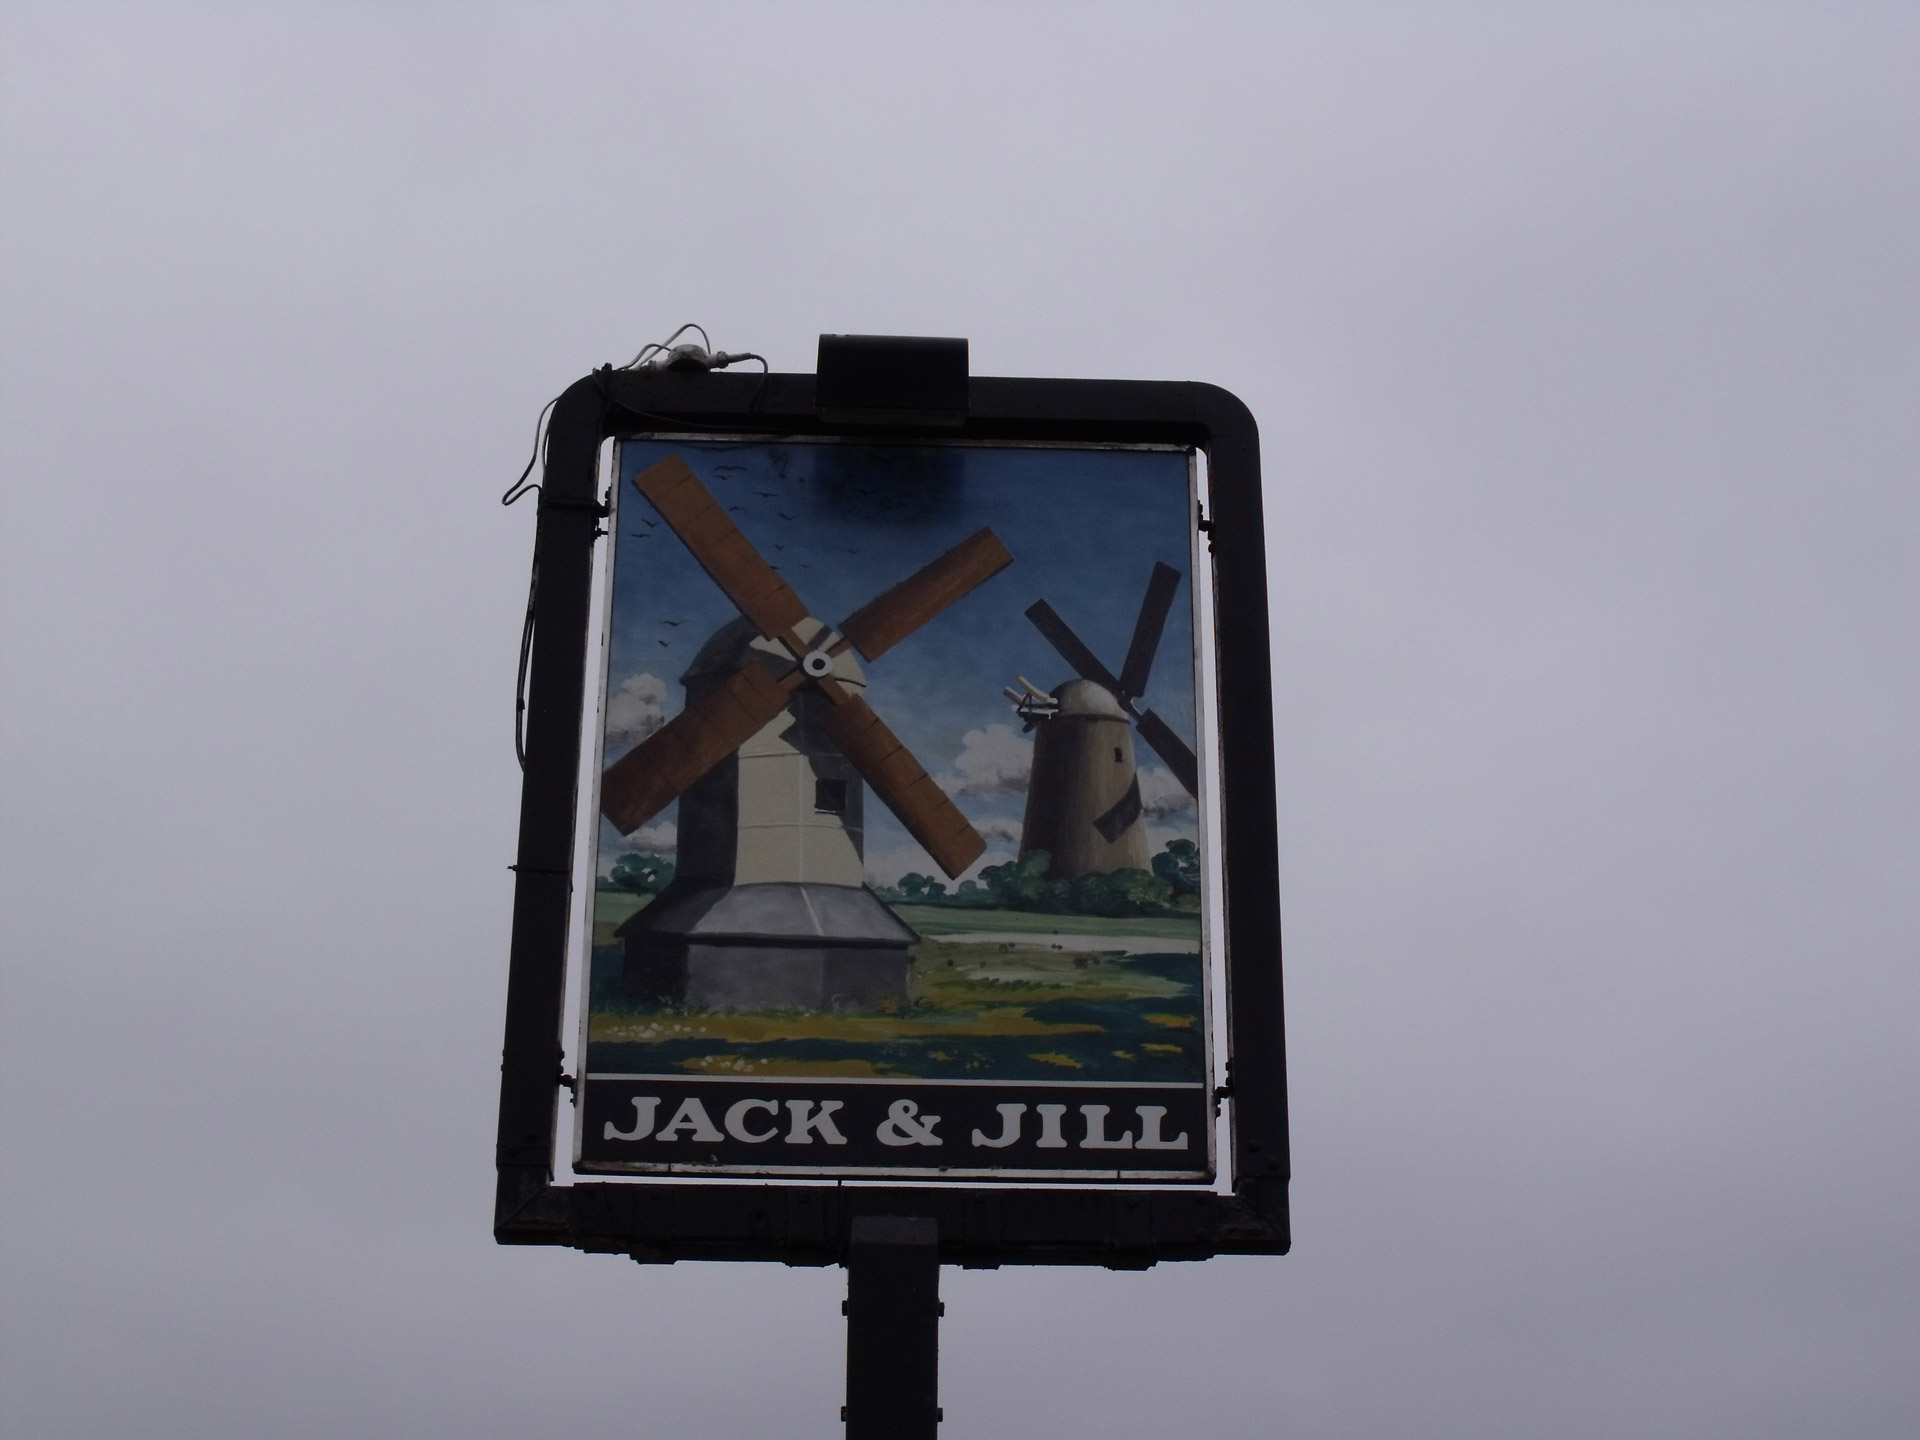 old british pub names jack and jill british pub names the jack and jill free photo